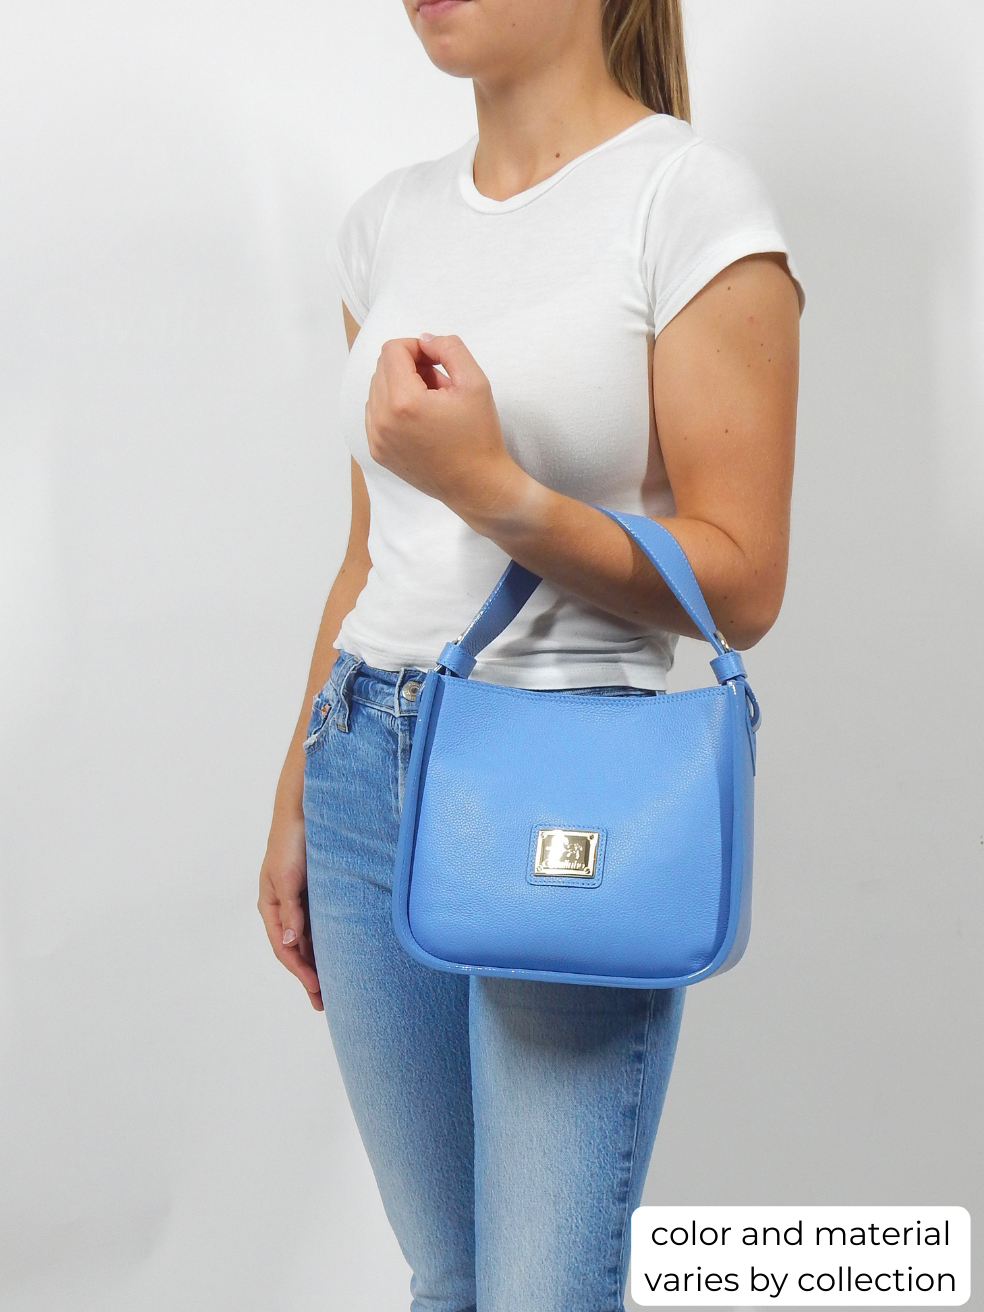 #color_ Beige White | Cavalinho Gallop Patent Leather Handbag - Beige White - bodyshot_0475_1_8fcf7fa8-5166-45e6-b55d-01f9e405c060